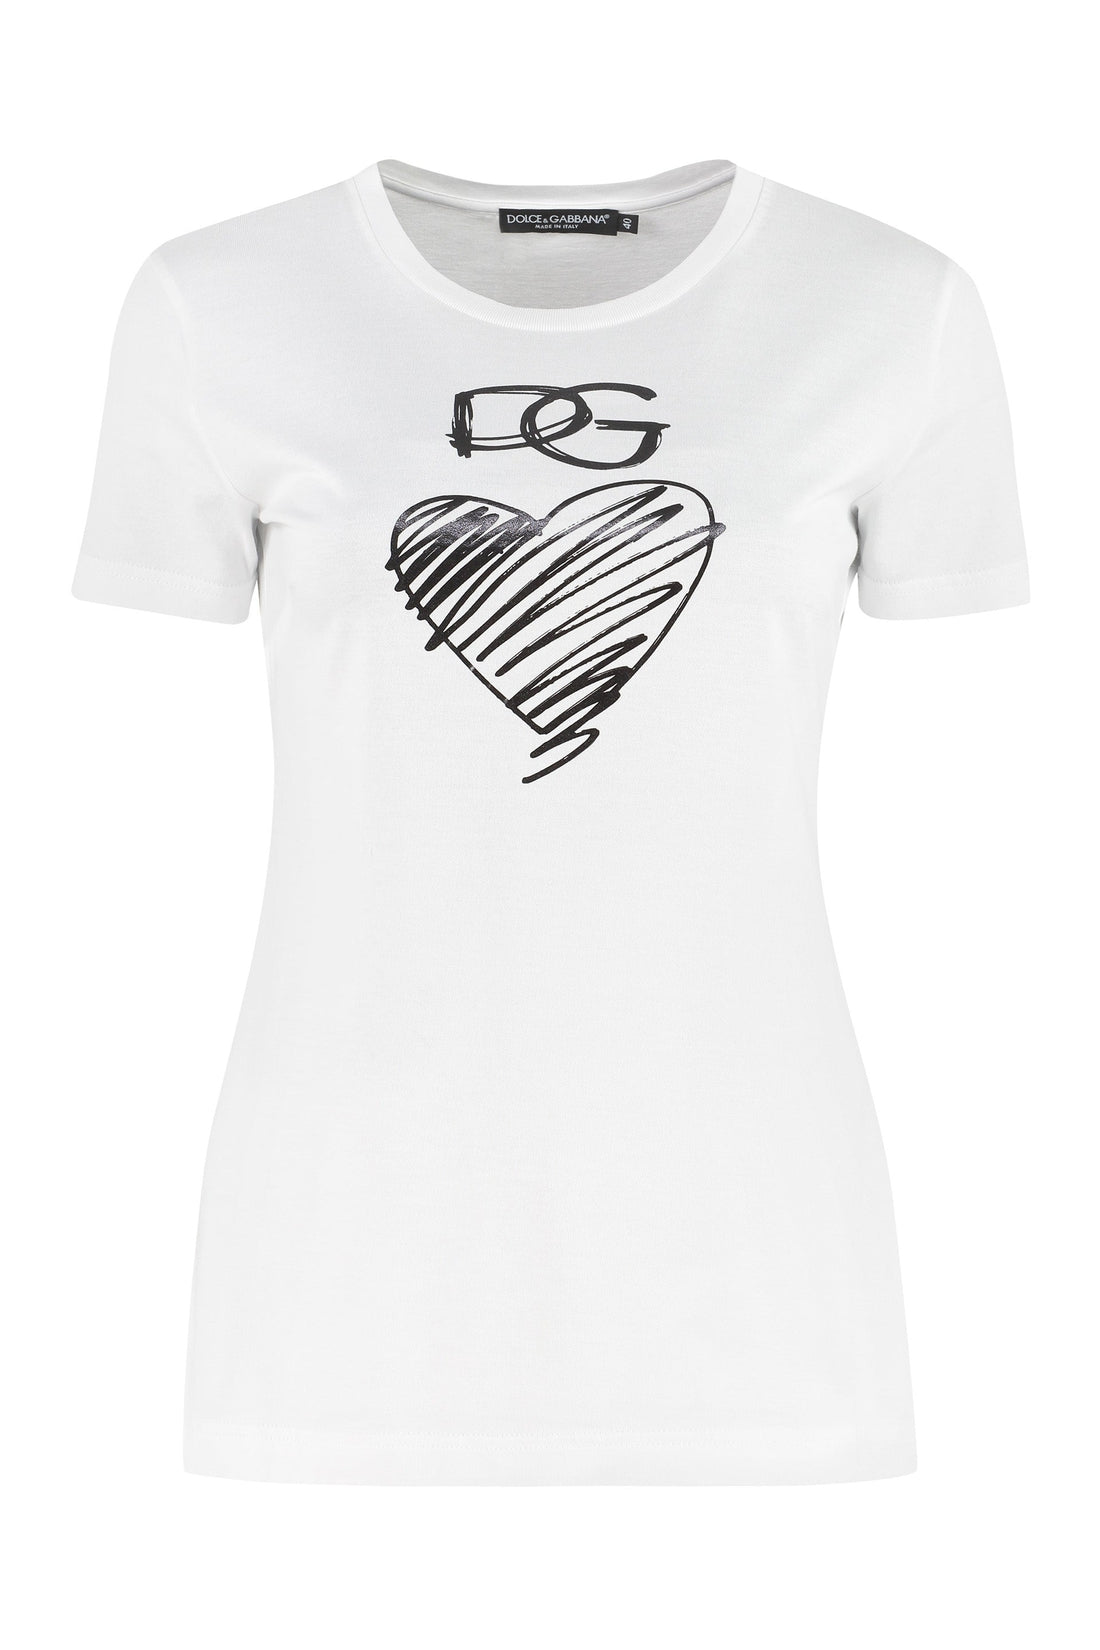 Dolce & Gabbana-OUTLET-SALE-Logo print t-shirt-ARCHIVIST